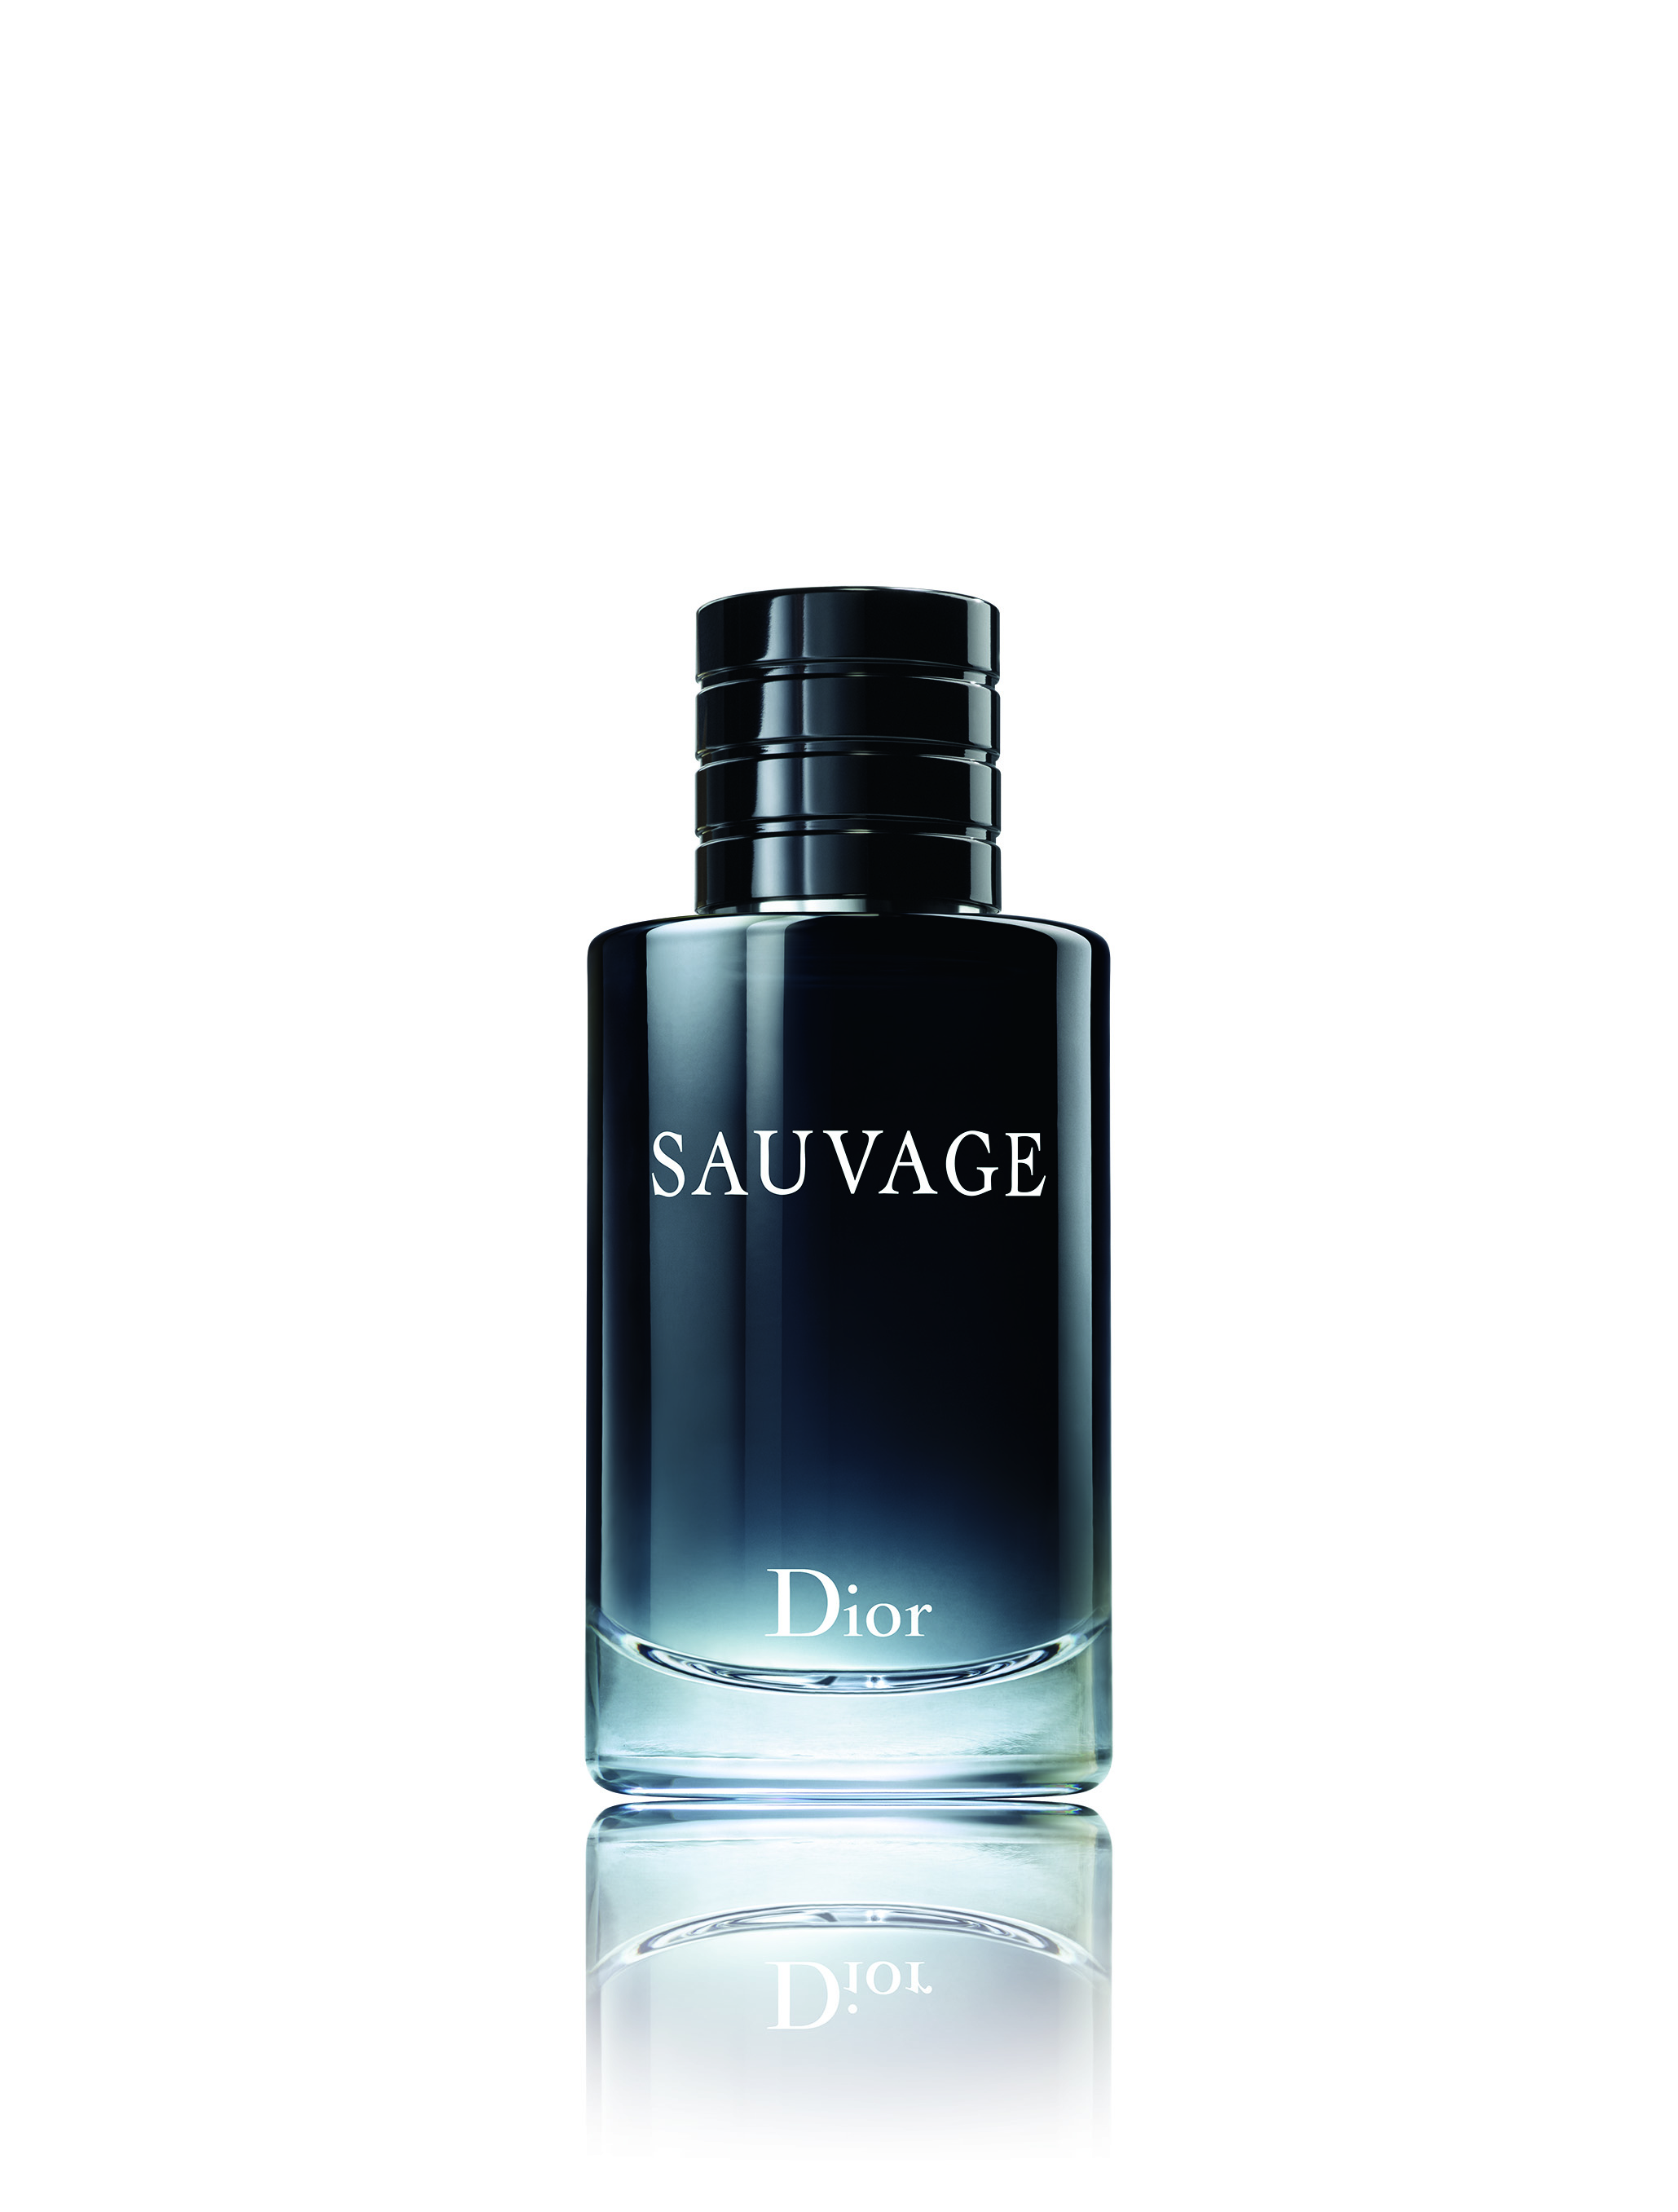 EDT 100 ml Dior Sauvage zakoupíte za 2674 Kč ve vybraných parfumeriích.